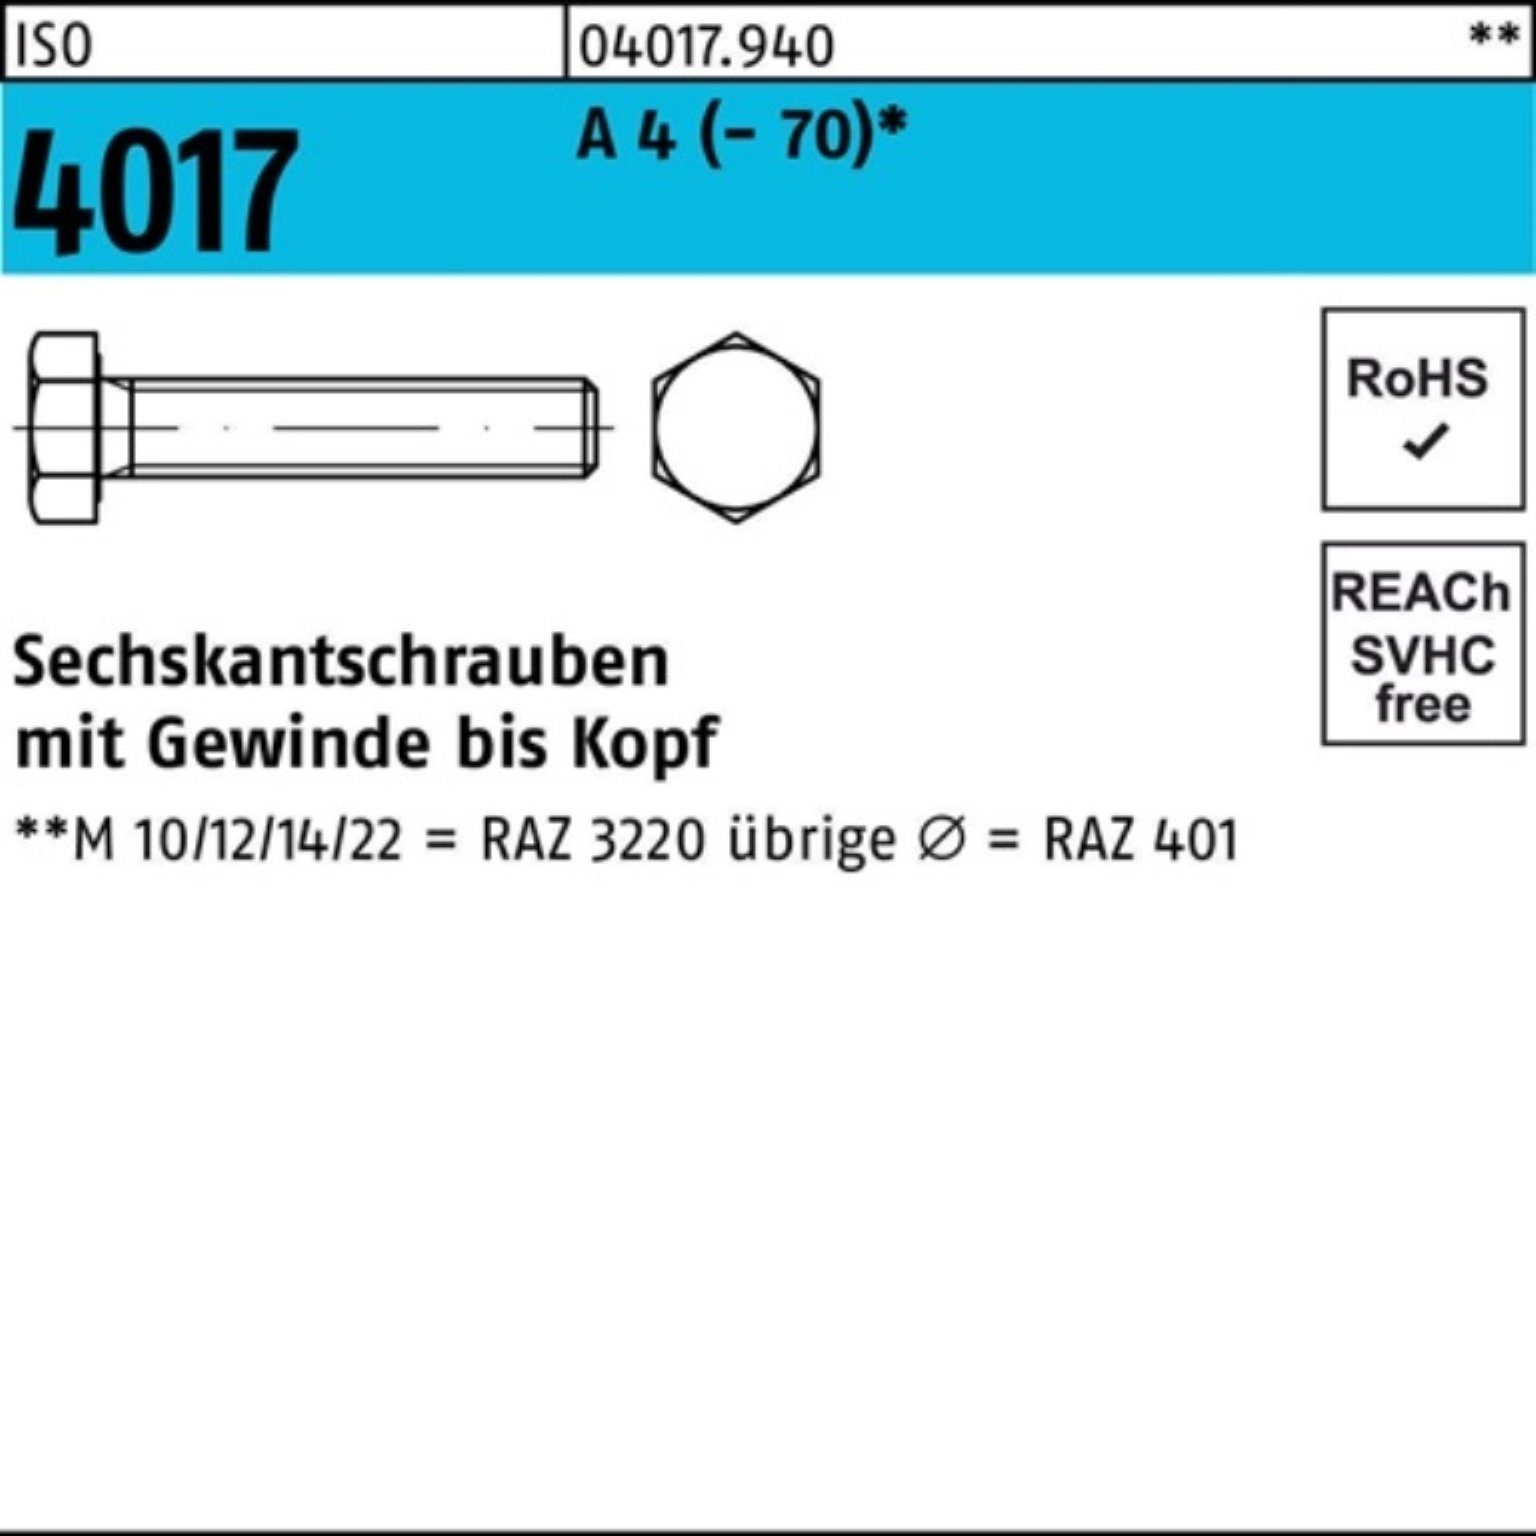 VG Stück Bufab ISO Sechskantschraube 4017 A (70) 100er 60 10 Pack Sechskantschraube 4 M22x